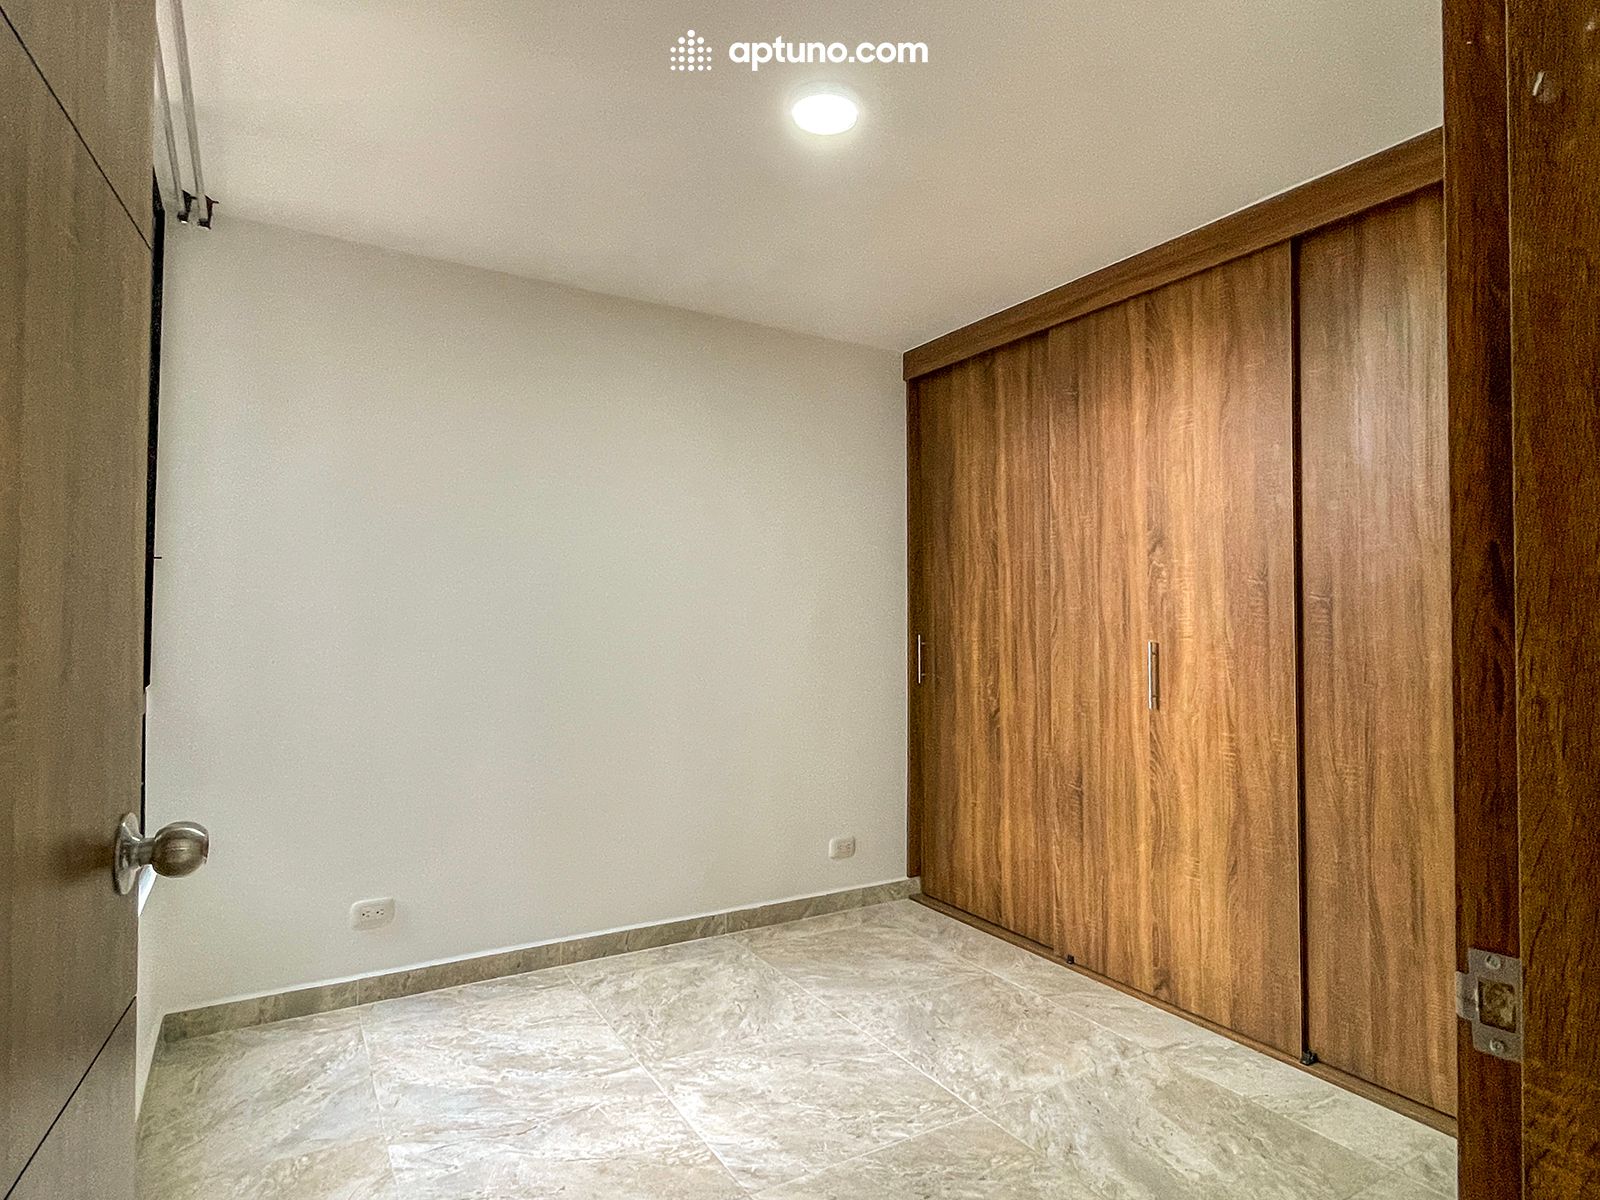 Apartamento en arriendo Chía 55 m² - $ 1.200.000,00